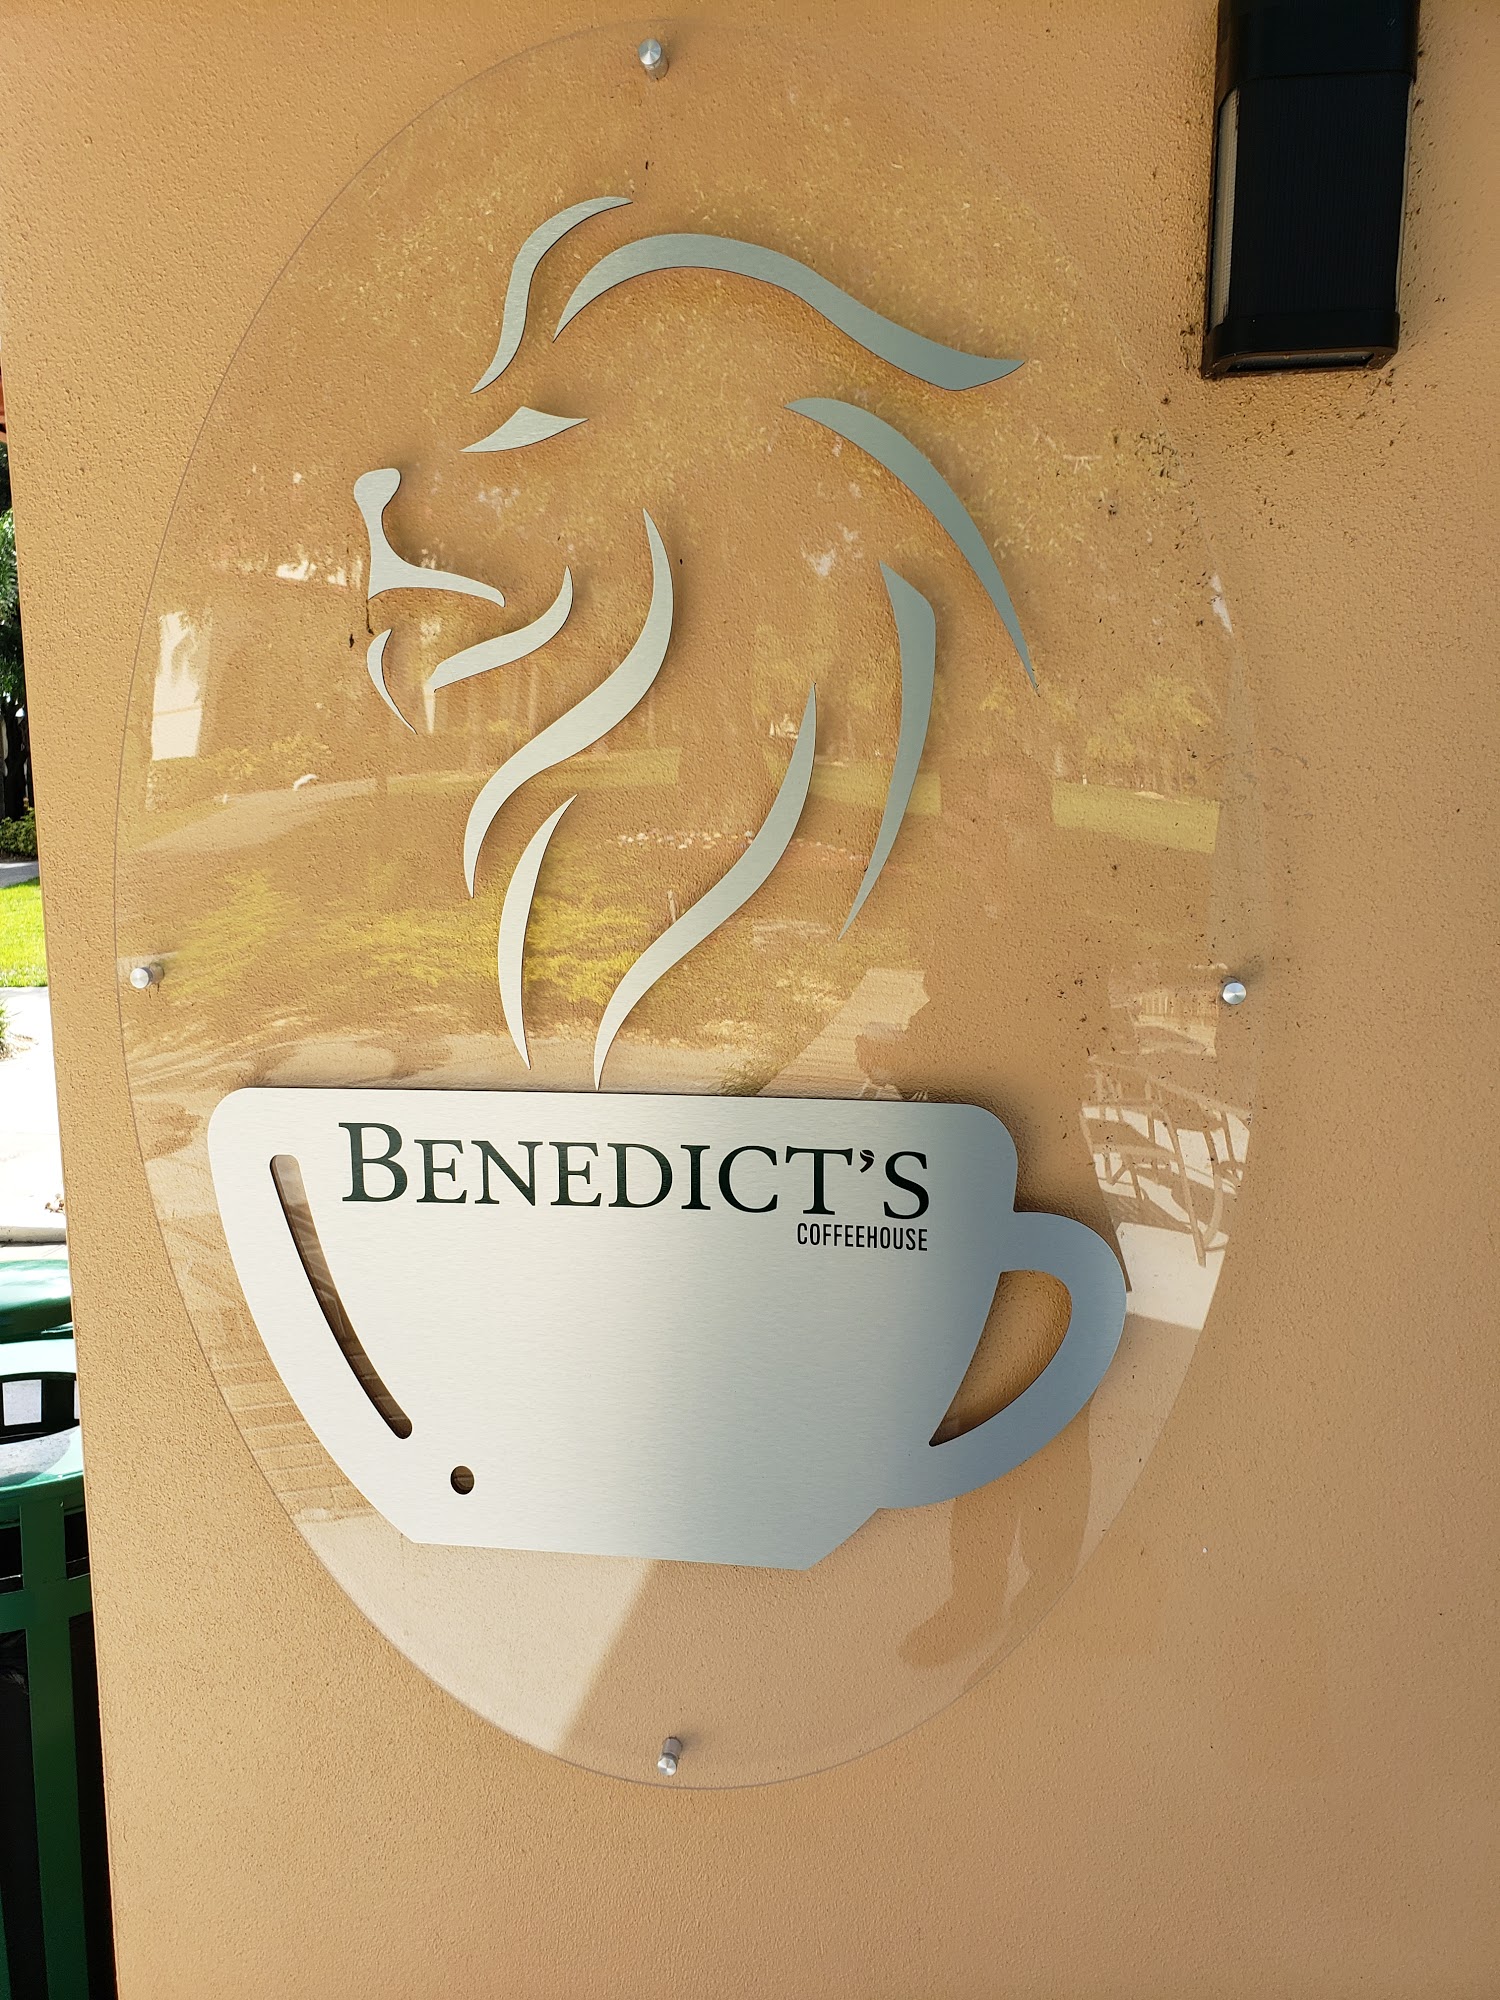 Benedict's Coffeehouse